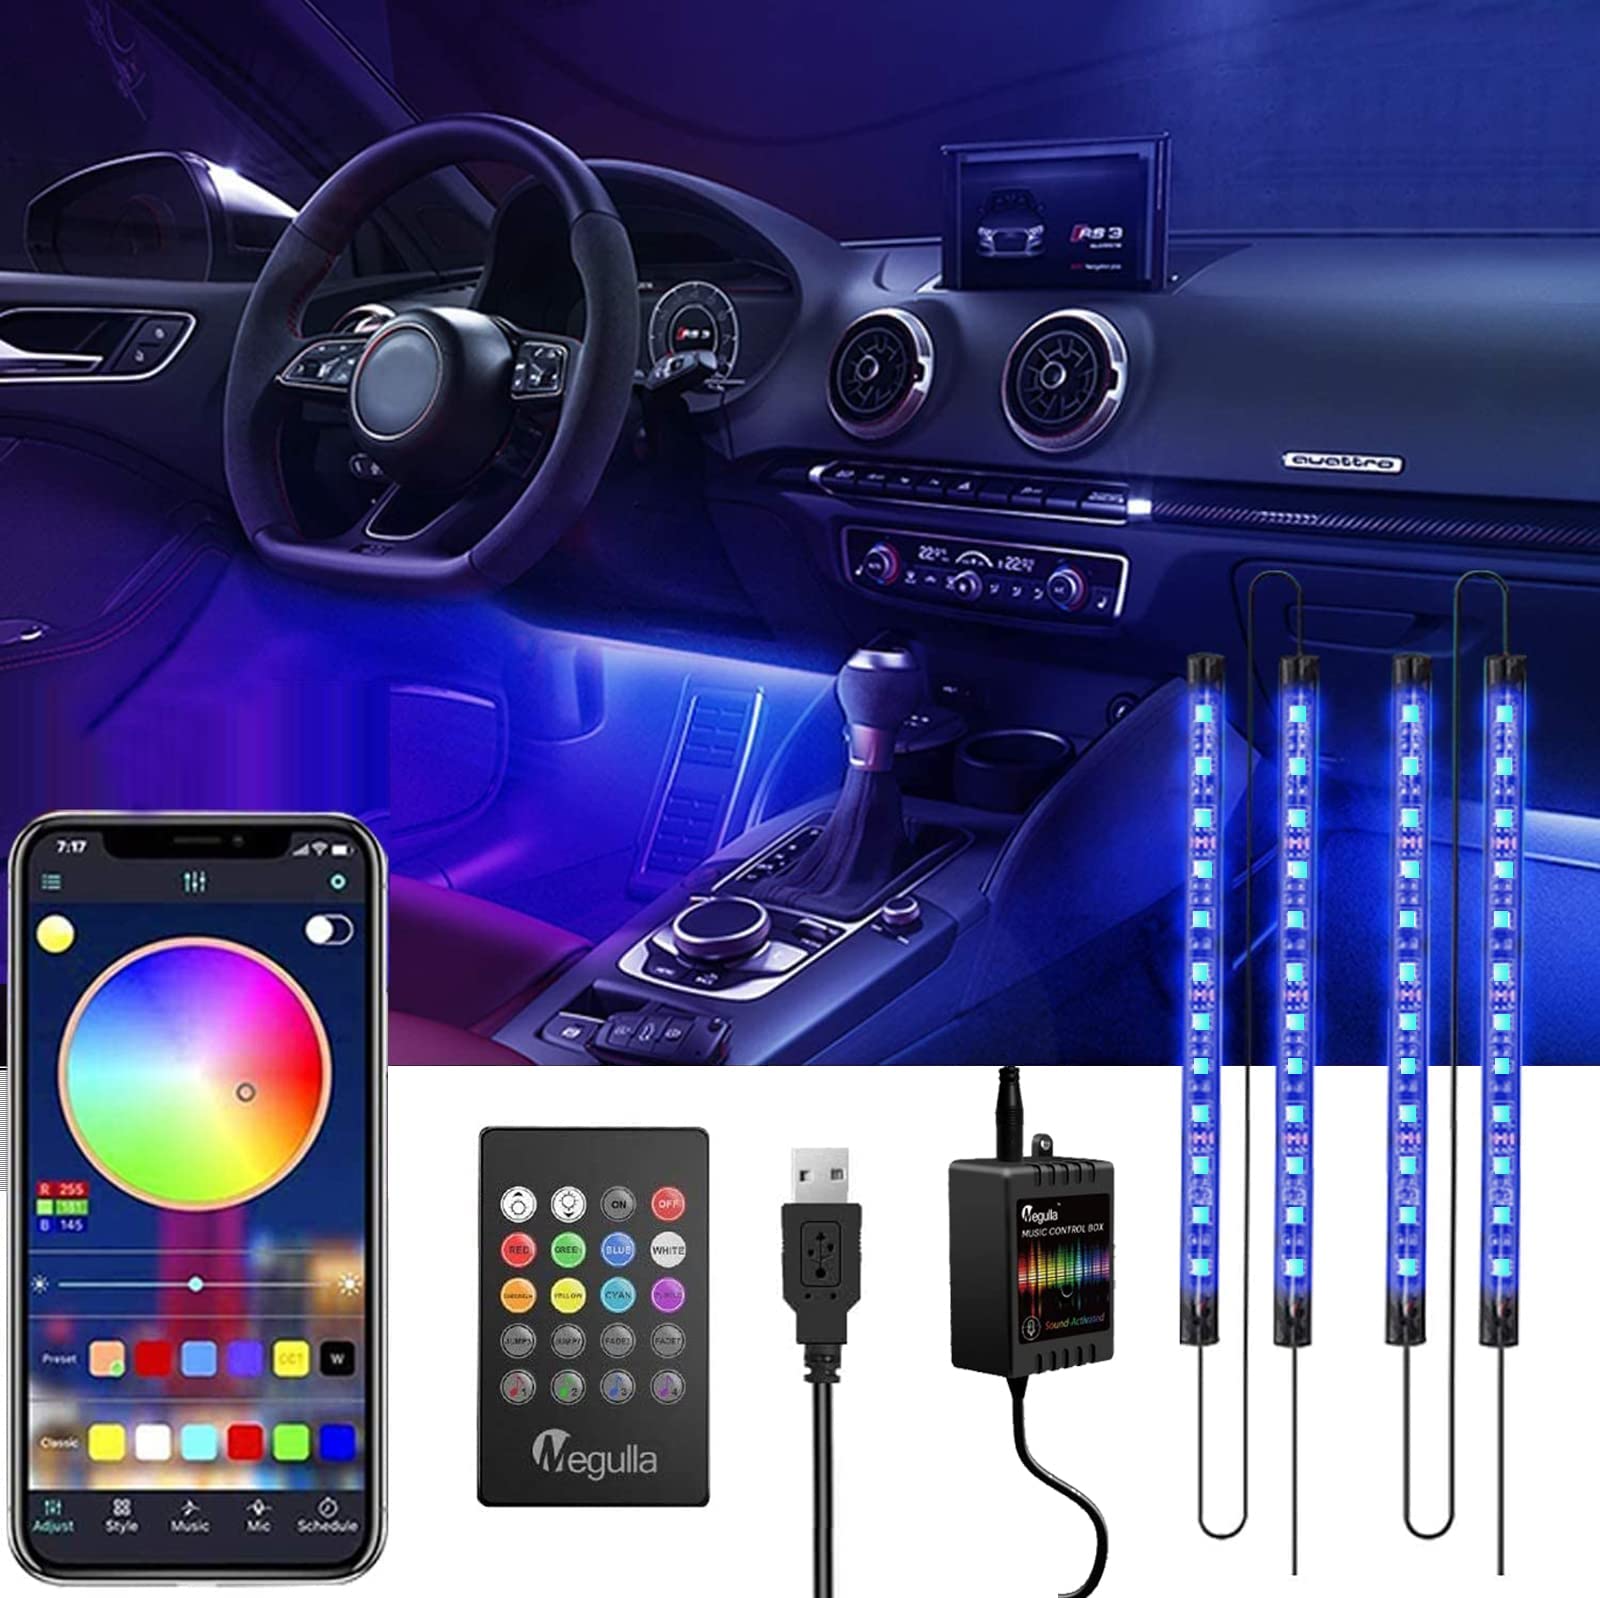 Megulla Auto-LED-Leuchten, RGB-Auto-Innenbeleuchtung mit App und Fernbedienung, mehrfarbige Auto-USB-Innenbeleuchtung mit Musiksynchronisierung, cooles Autozubehör für Männer von Megulla